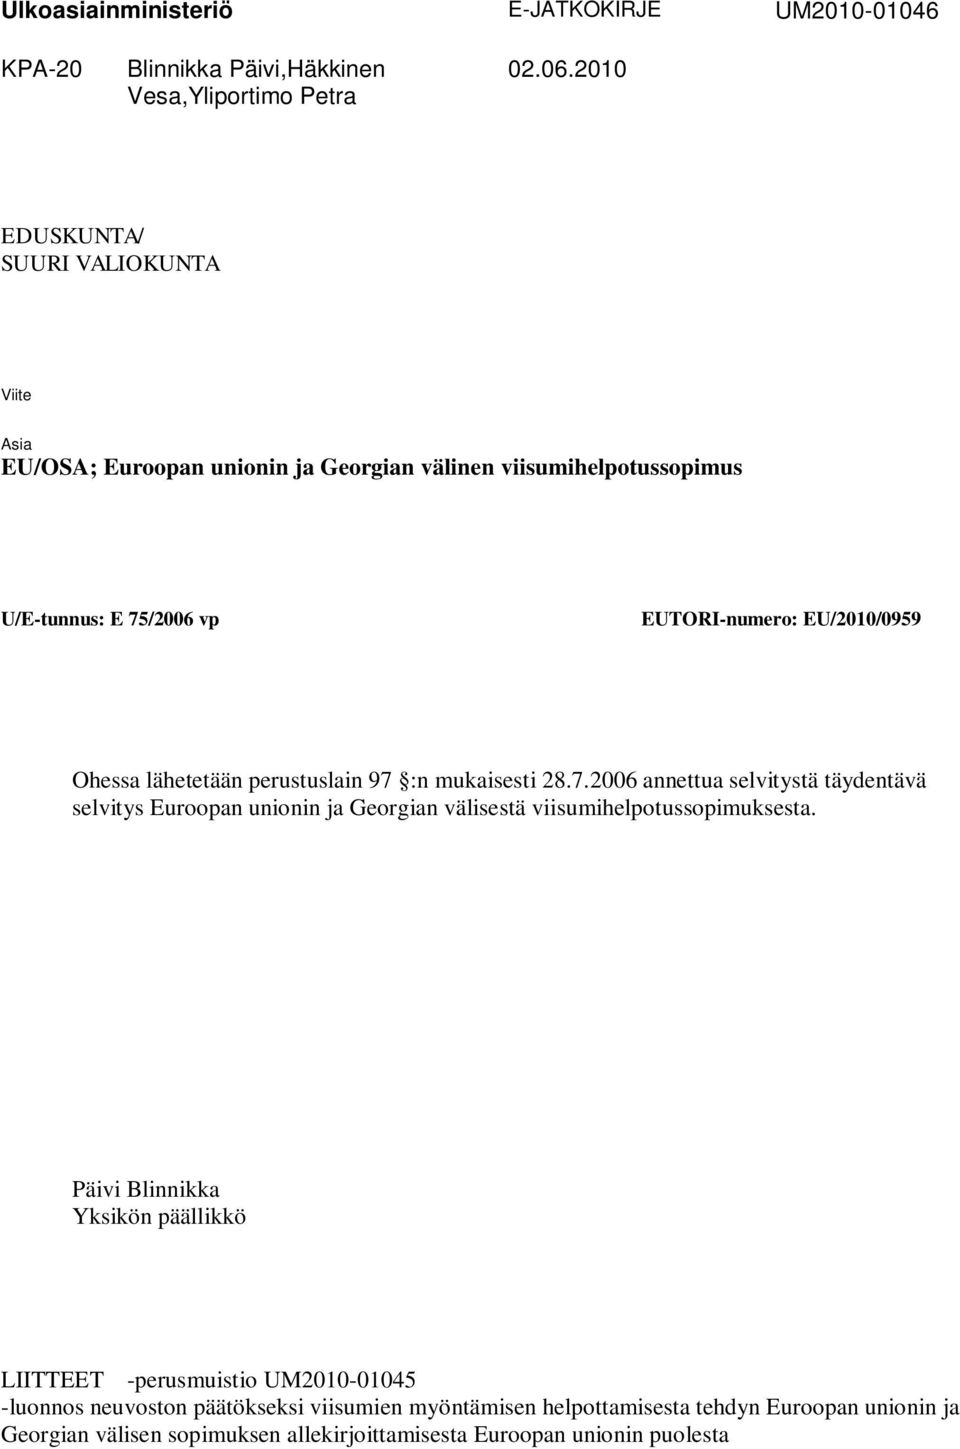 Ohessa lähetetään perustuslain 97 :n mukaisesti 28.7.2006 annettua selvitystä täydentävä selvitys Euroopan unionin ja Georgian välisestä viisumihelpotussopimuksesta.